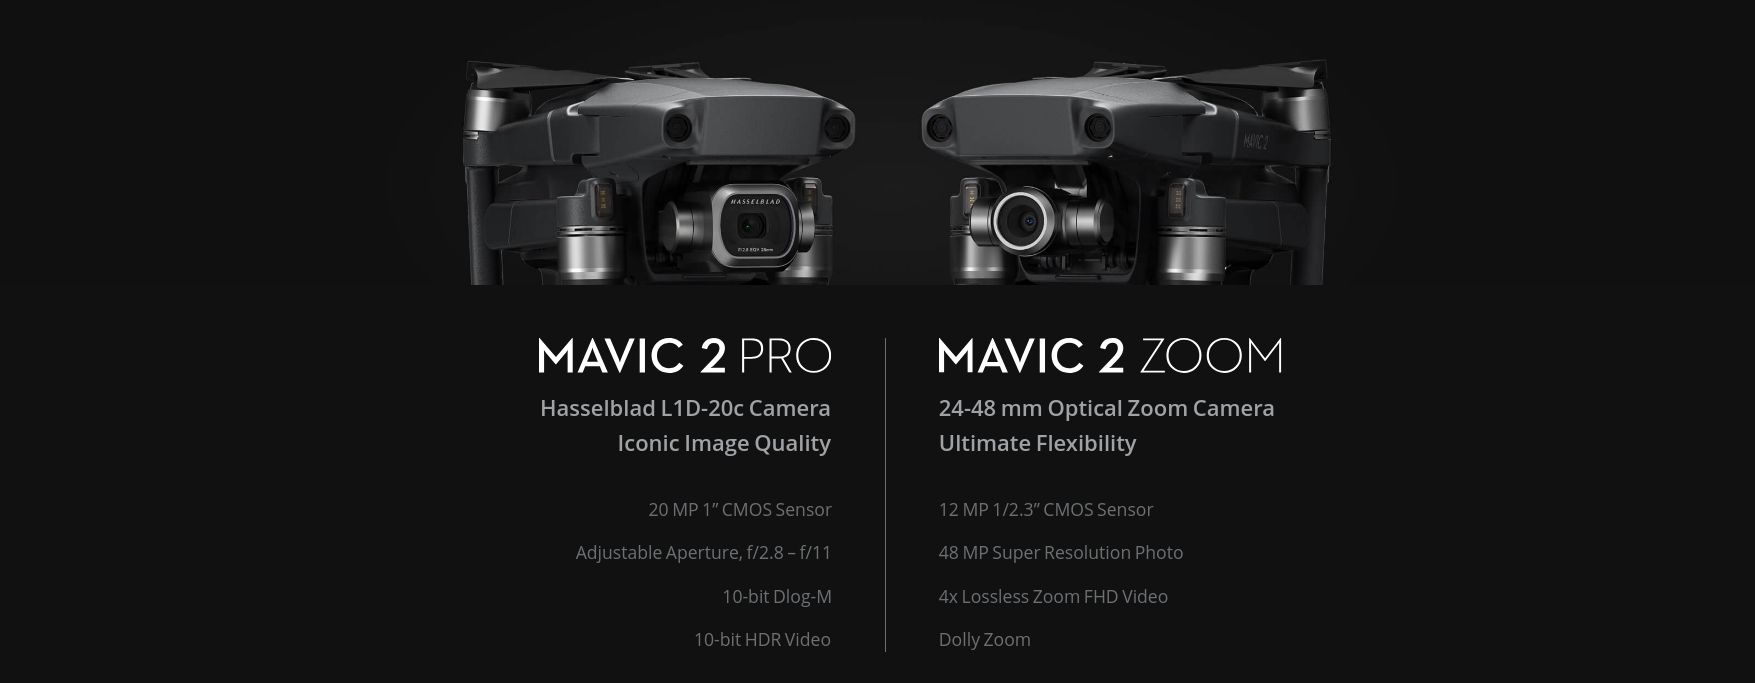 Mavic 2 Pro Zoom Comparison